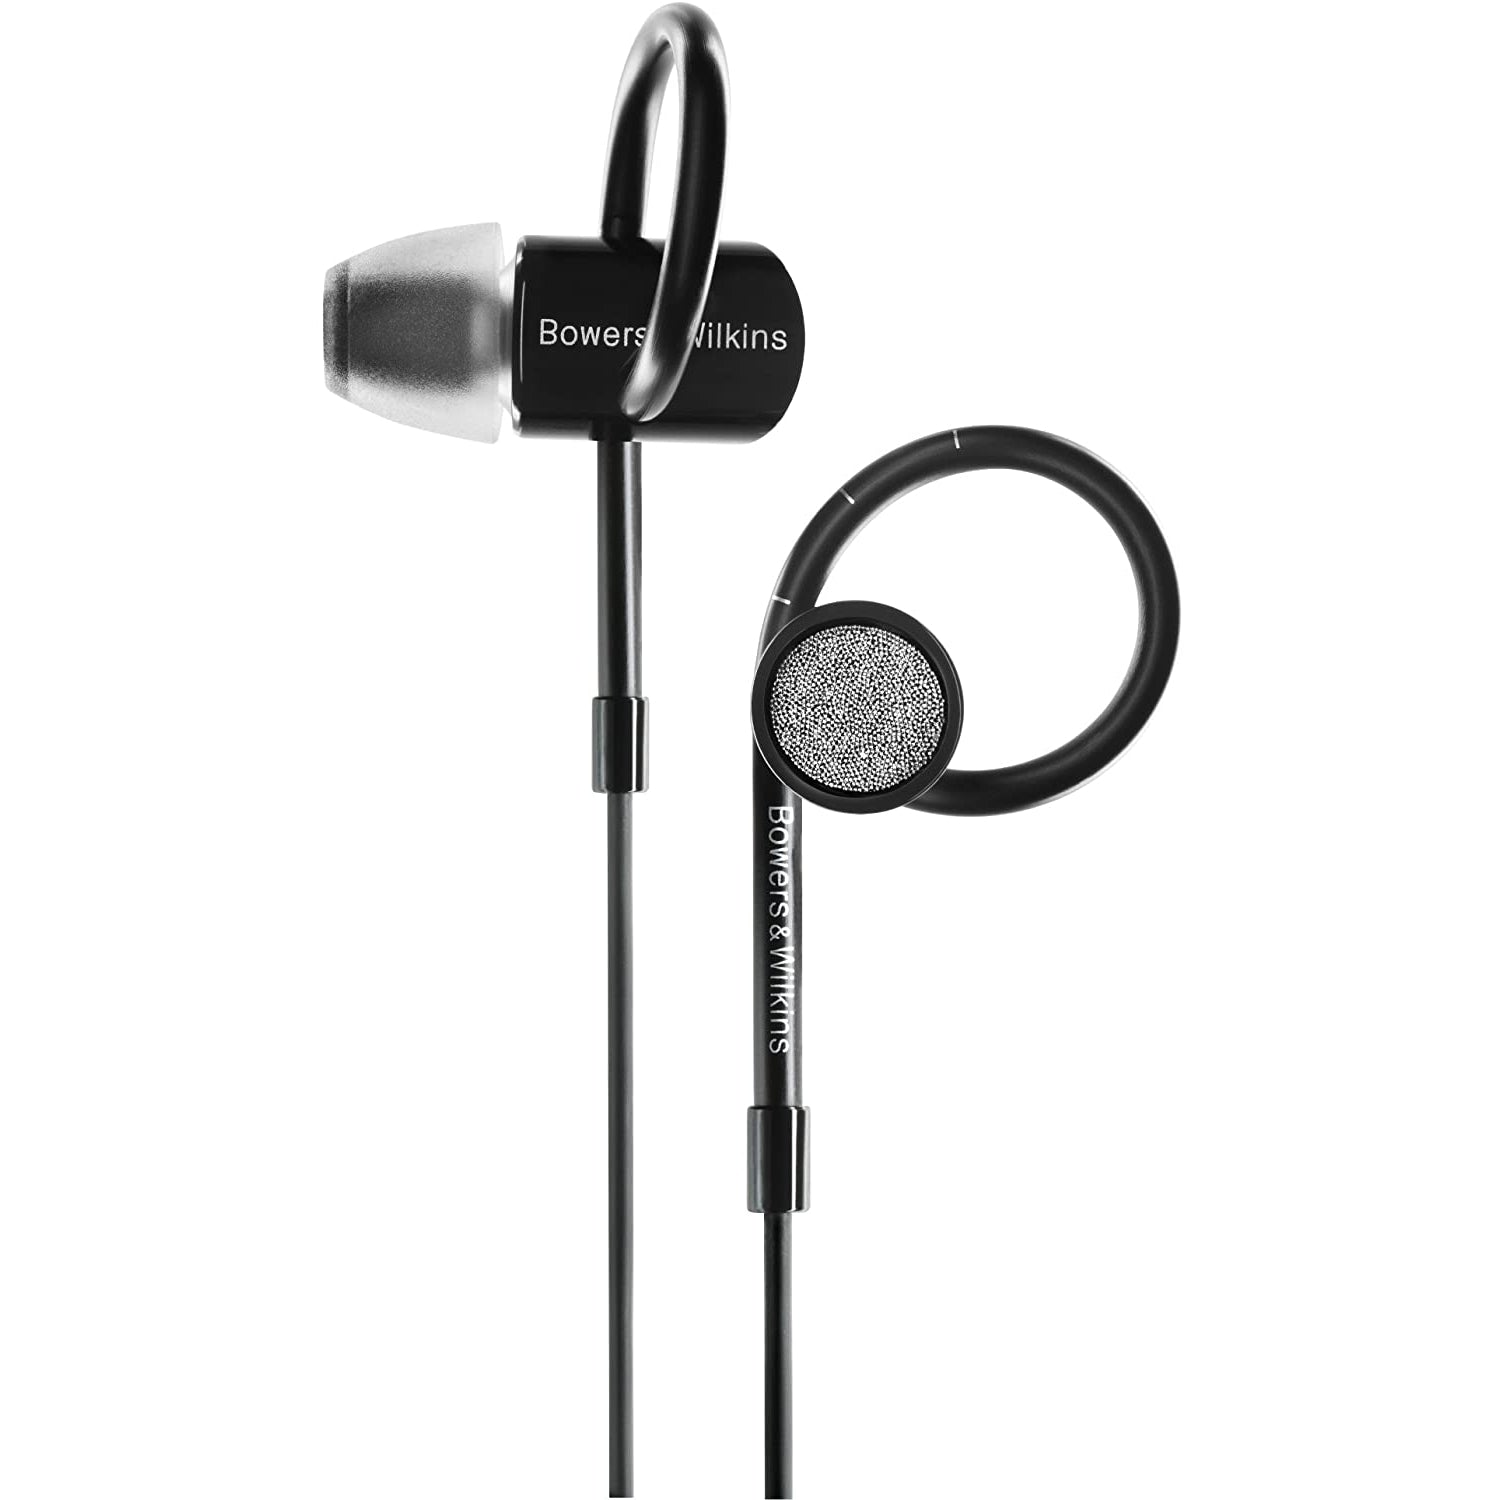 Bowers & Wilkins C5 Series 2 In-Ear Headphones, Black - Grade A